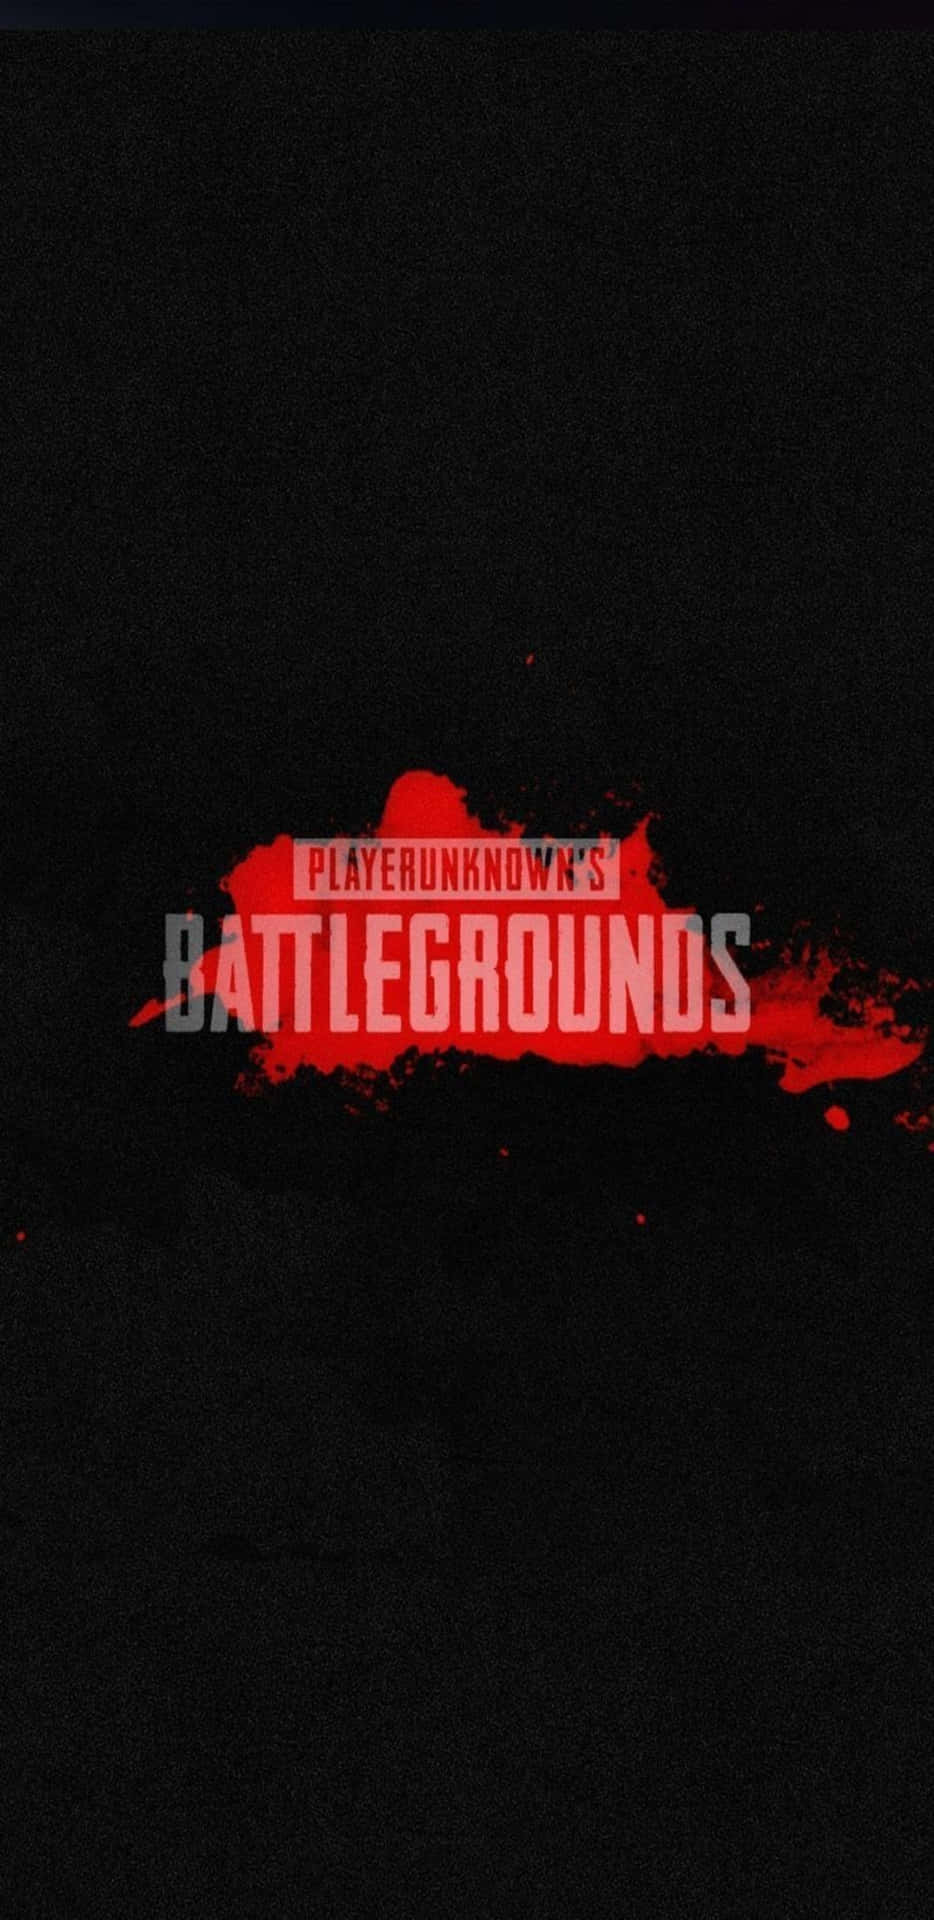 Pixel 3XL Playerunknown's Battlegrounds baggrundstitel med rødt splash